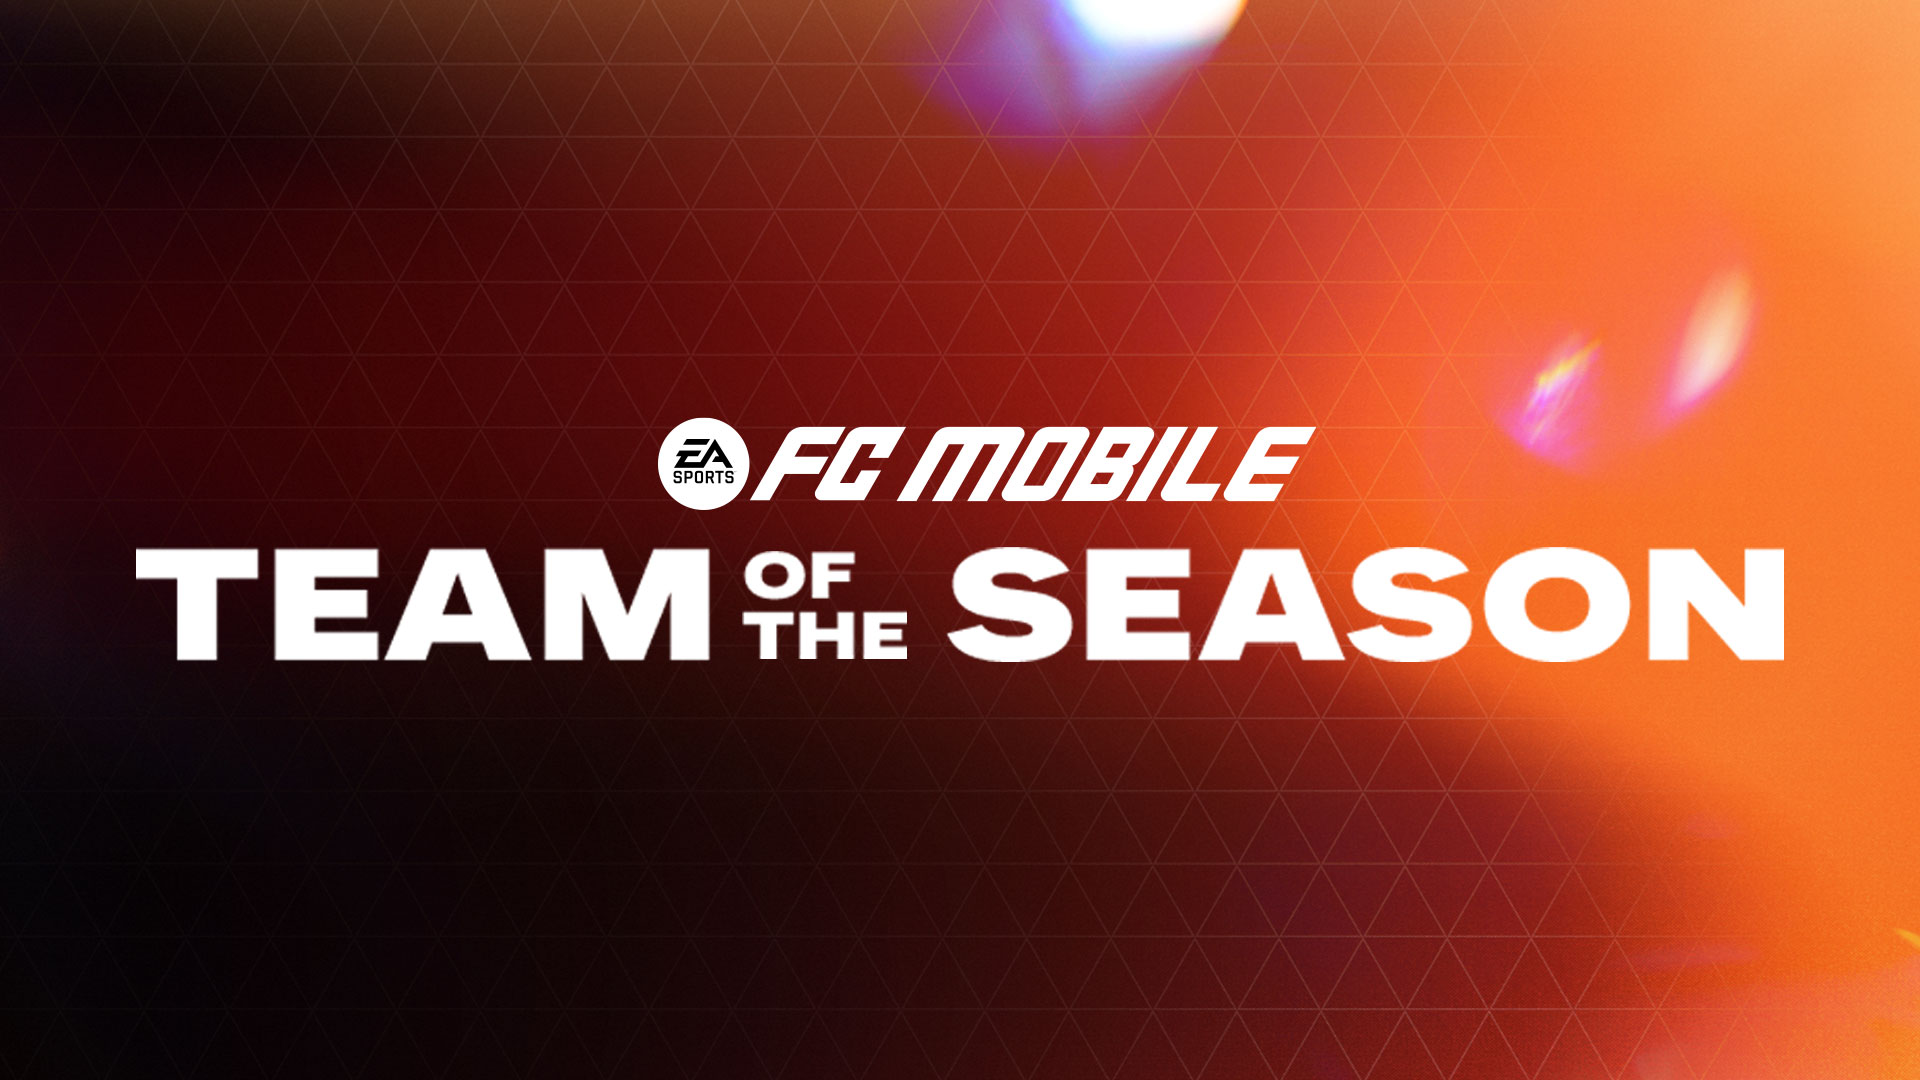 ea-sports-fc-mobile-team-of-the-season-baru-telah-dimulai